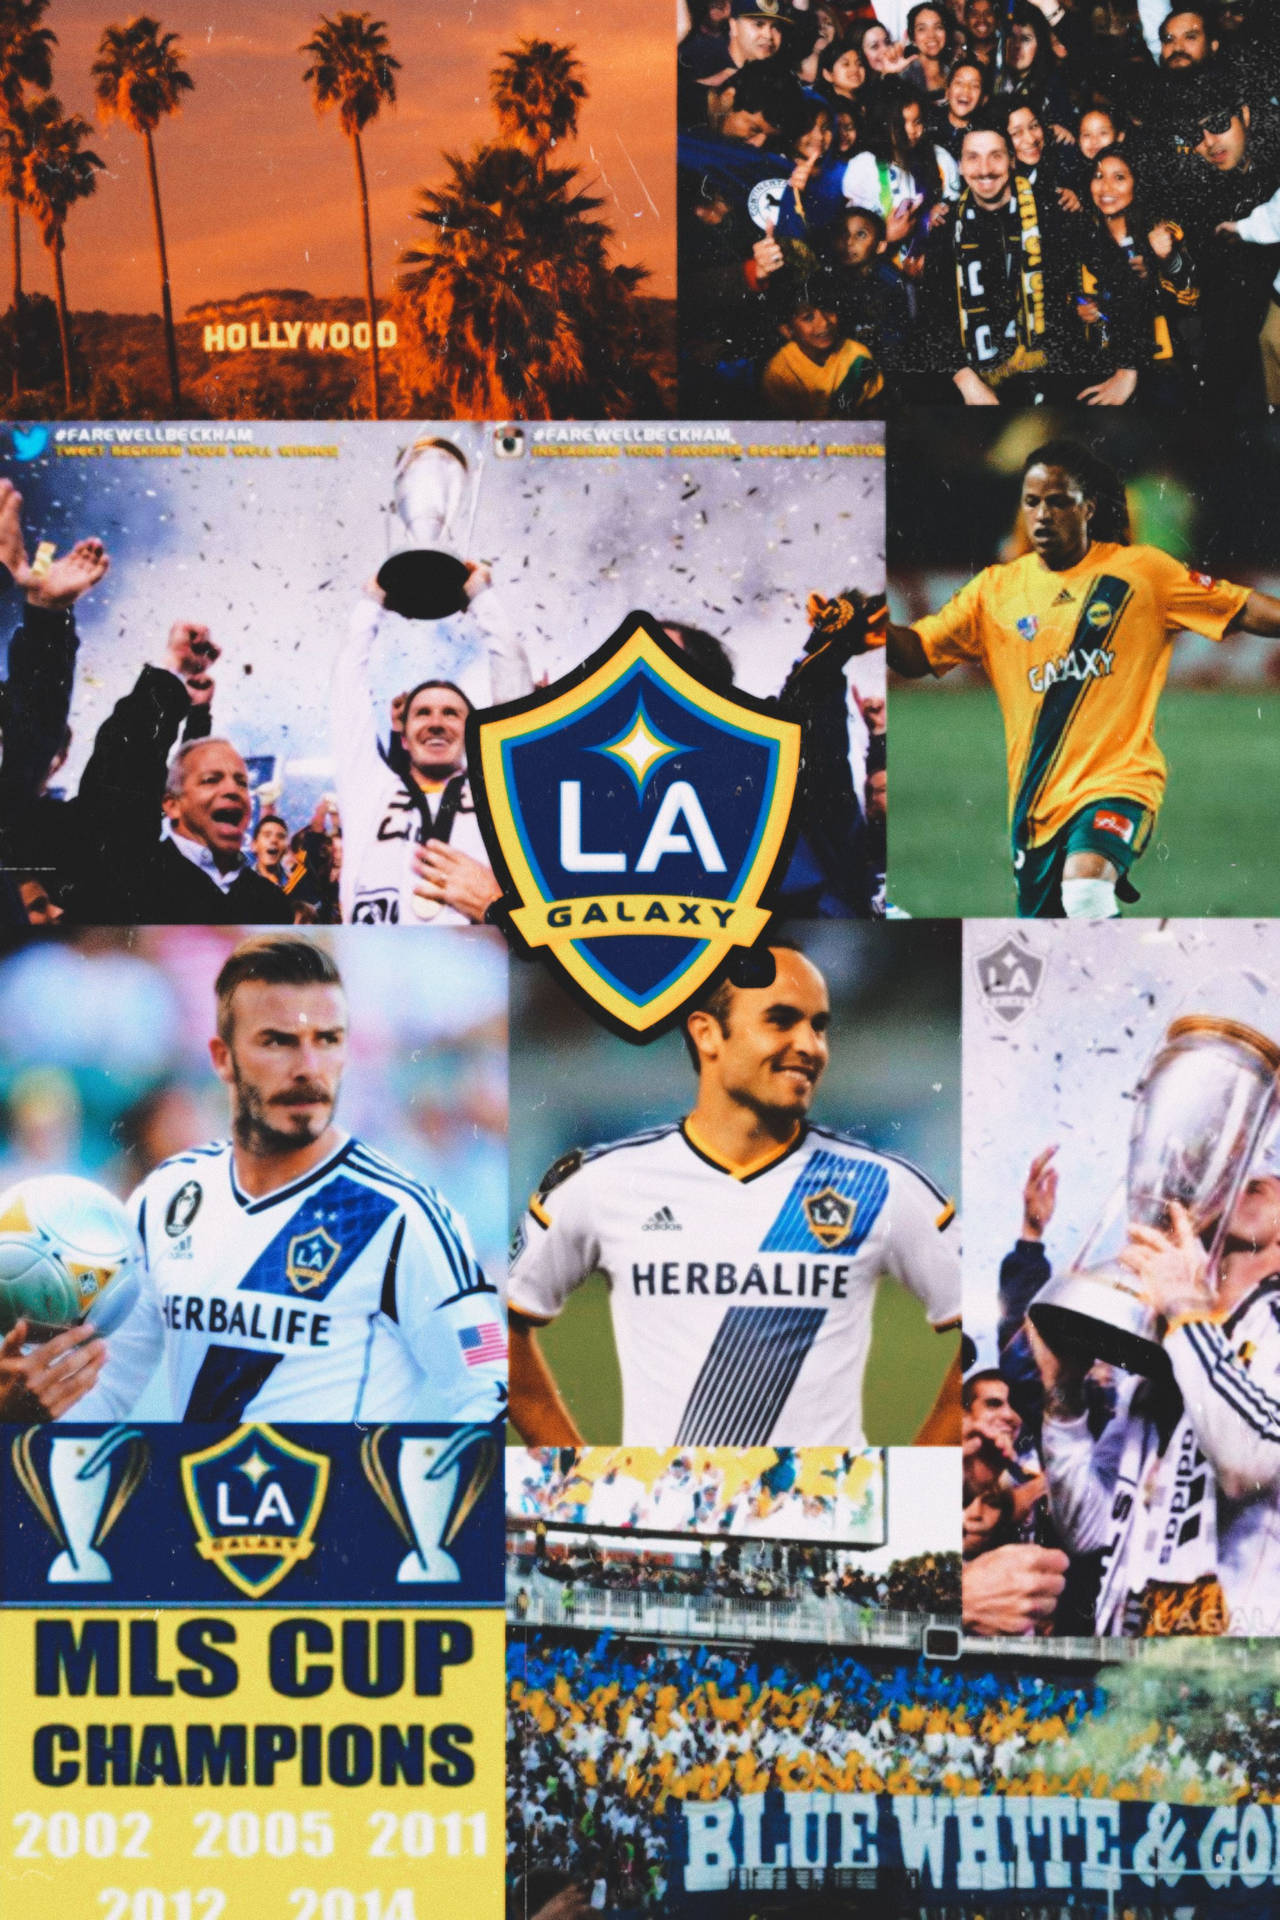 Collagefotografico Del La Galaxy Soccer Club Sfondo